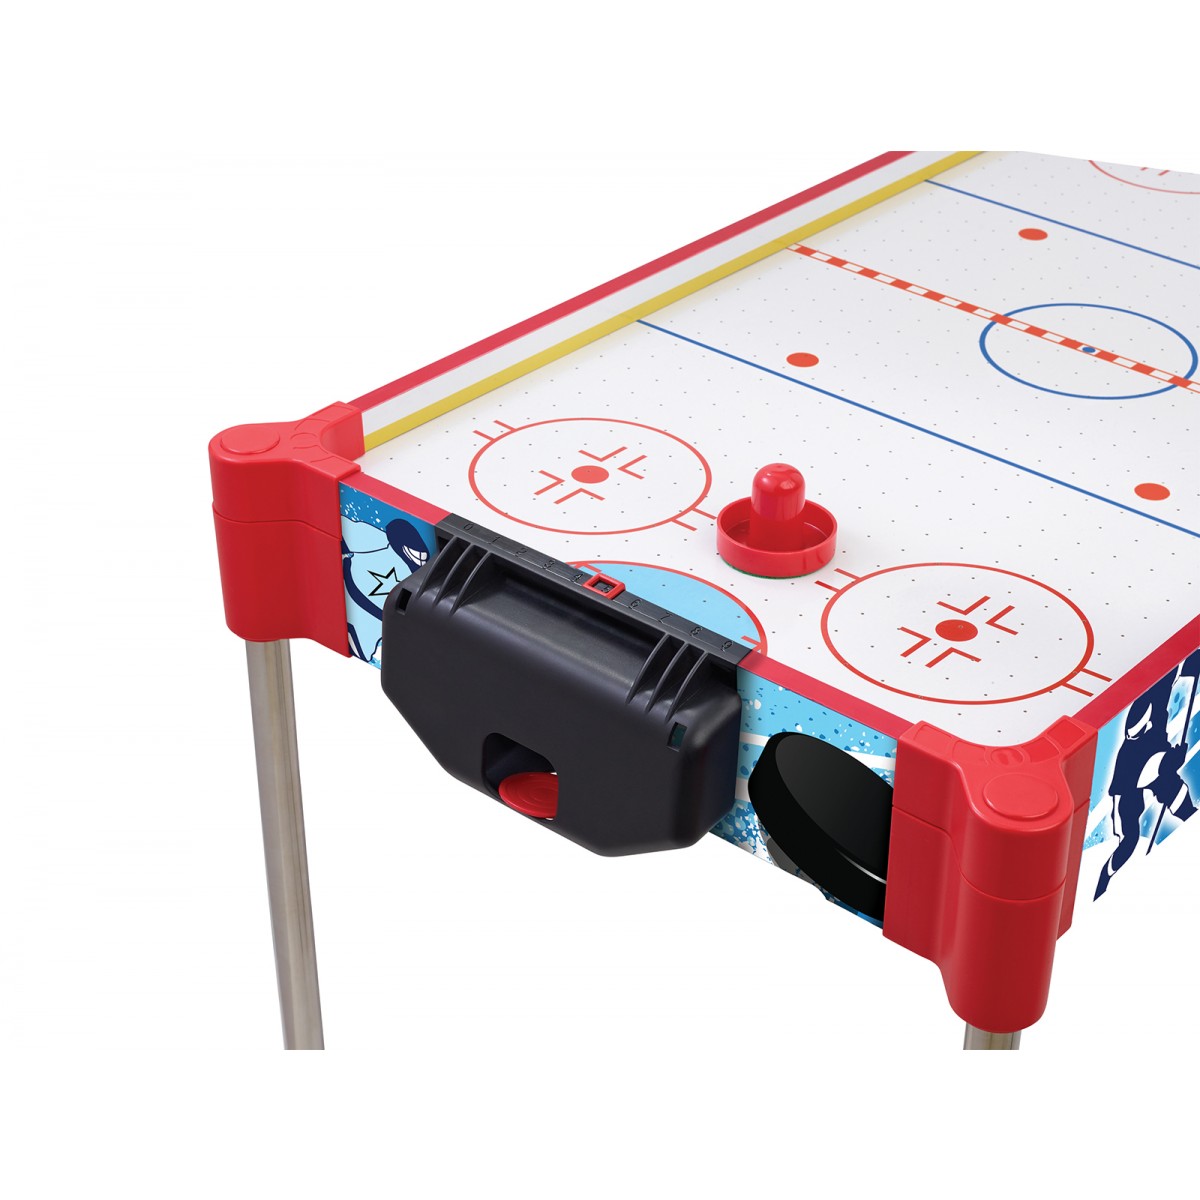 32 (82cm) Table / Tabletop Air Hockey